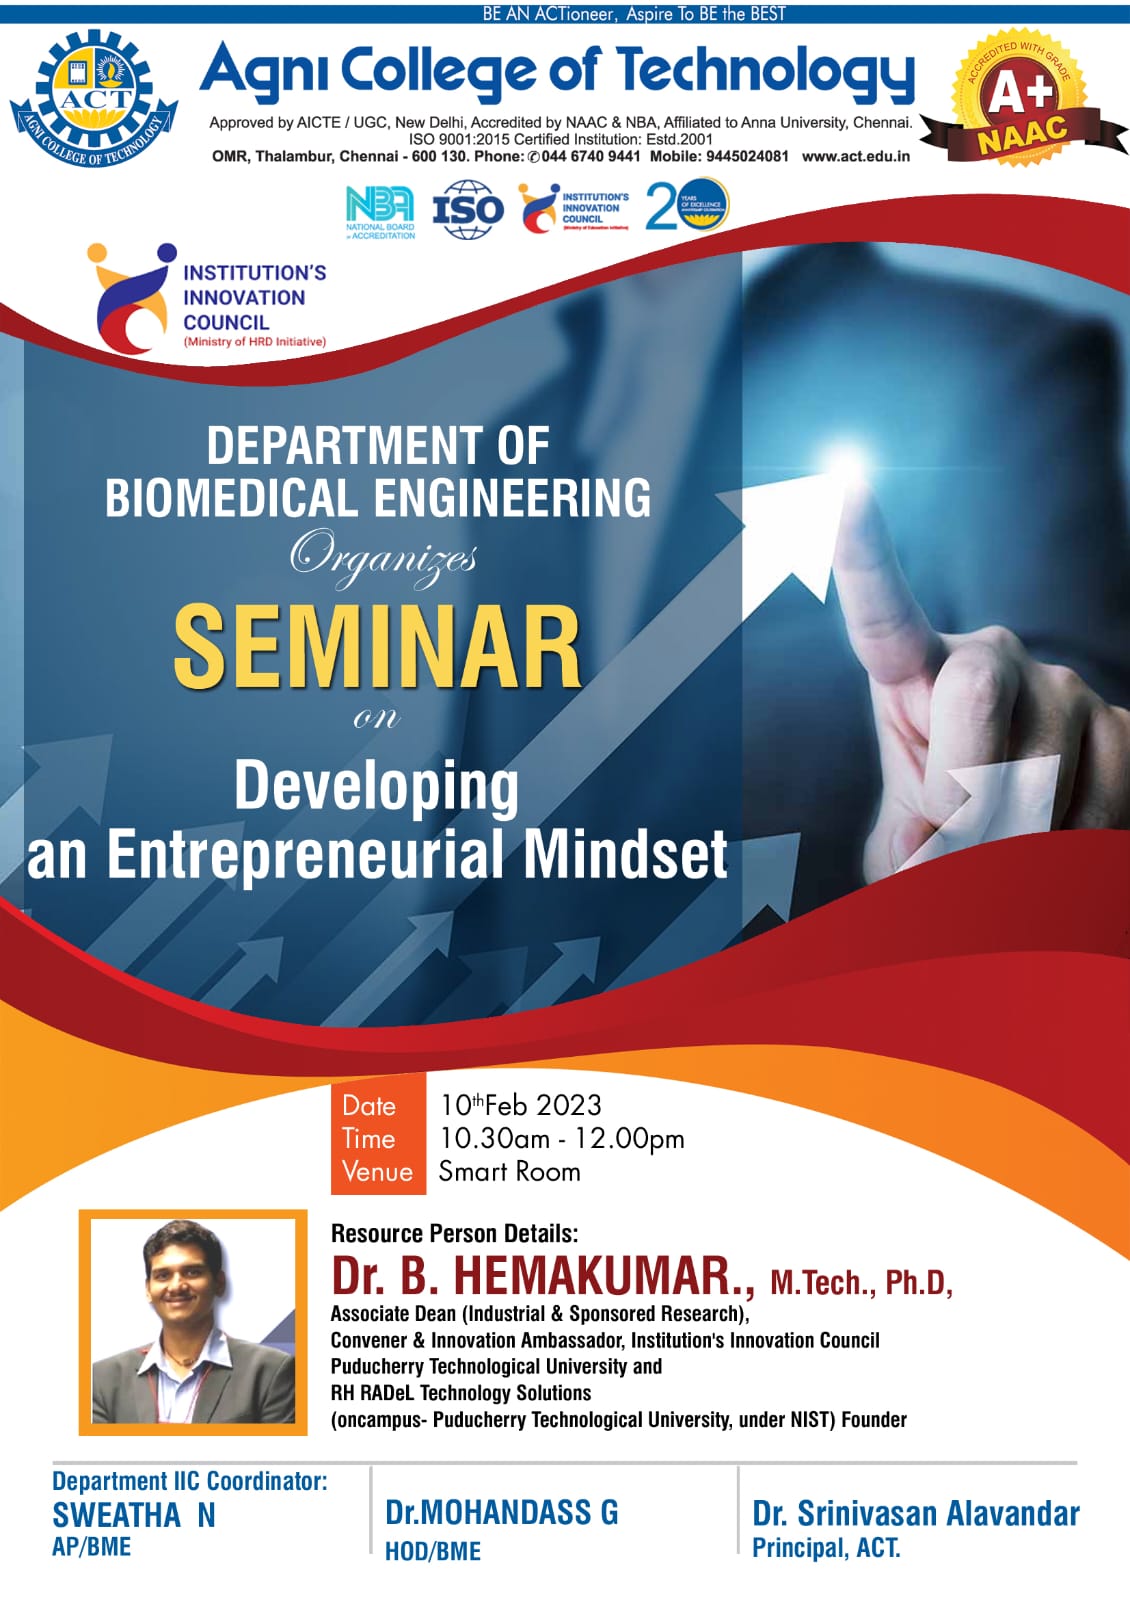 Seminar on Developing an Entrepreneurial Mindset